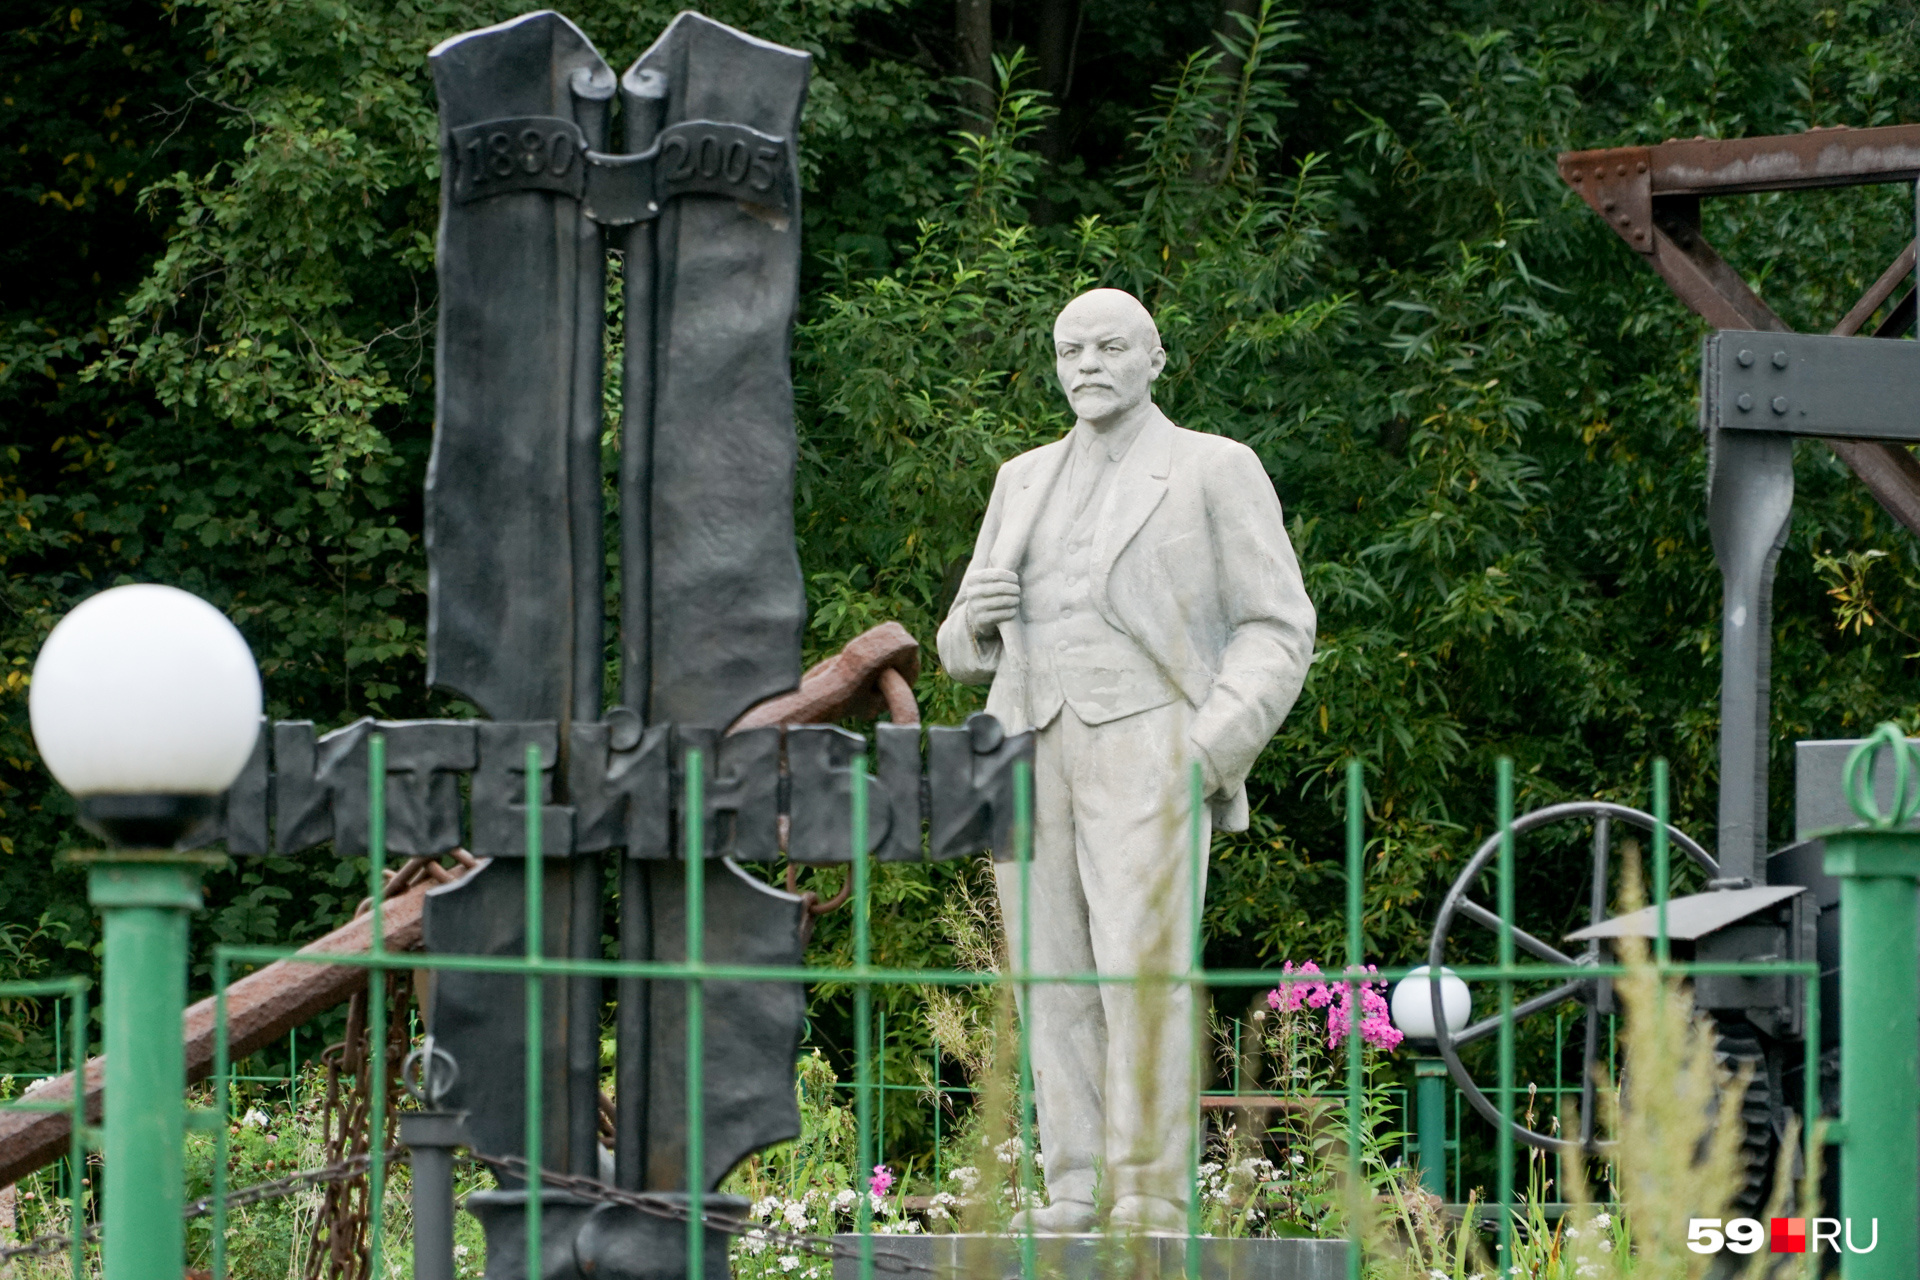 В музее собраны различные промышленные памятники из Чусового. Среди них оказался и памятник Ленину. Говорят, его привезли после закрытия одного из уральских заводов